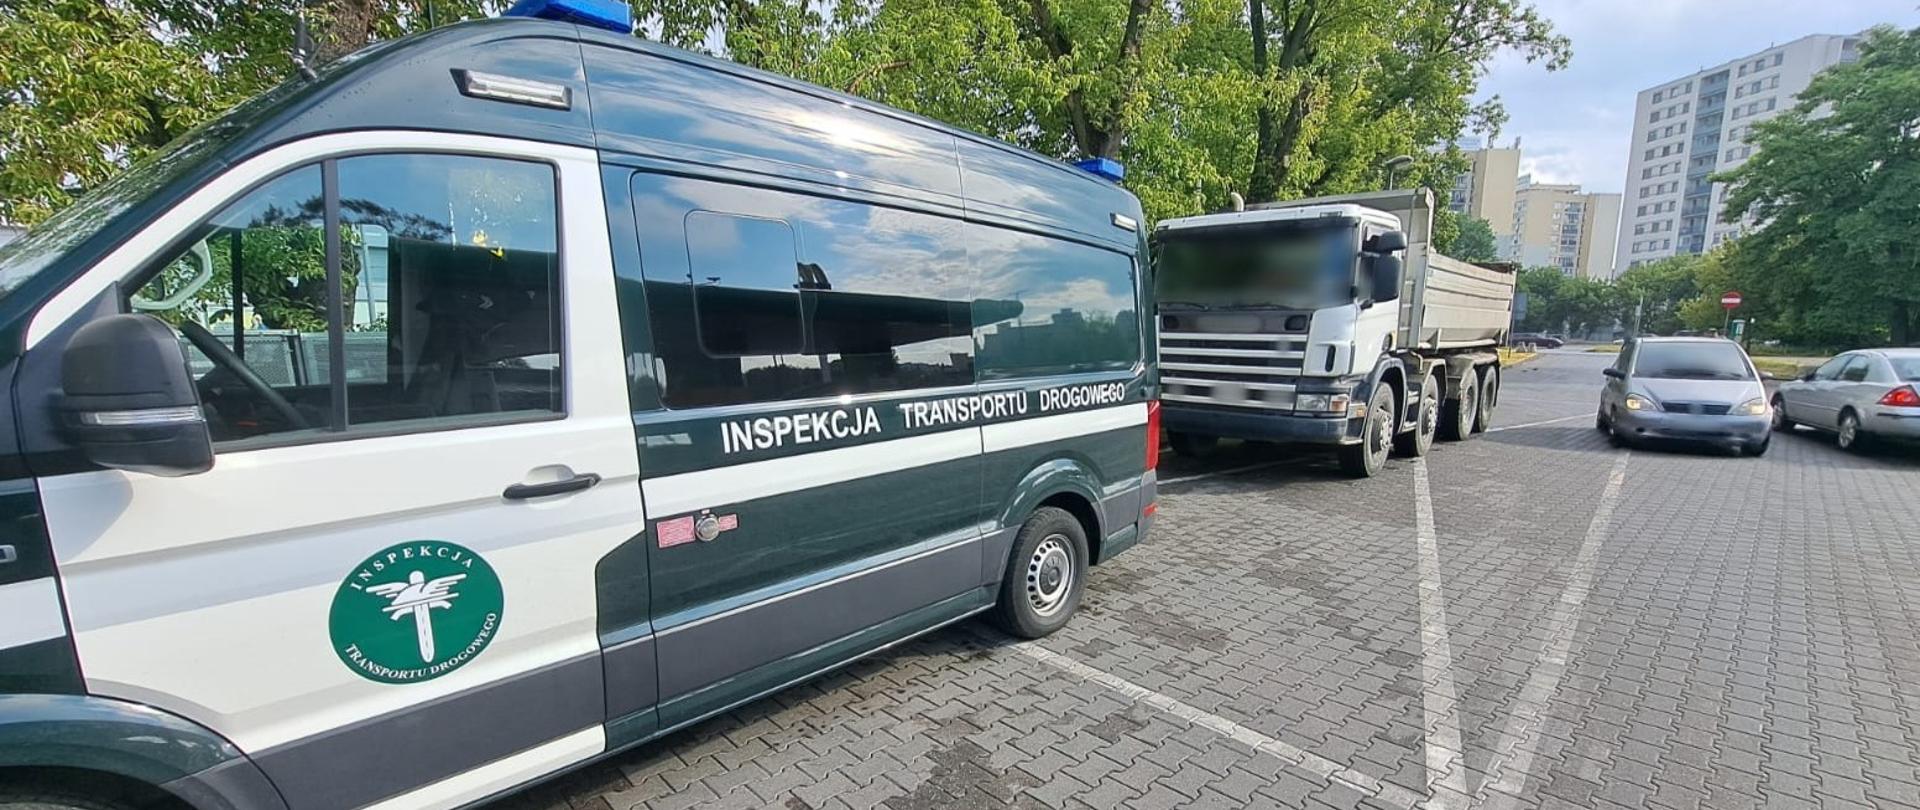 Miejsce kontroli wywrotki zatrzymanej przez patrol mazowieckiej Inspekcji Transportu Drogowego na terenie Warszawy